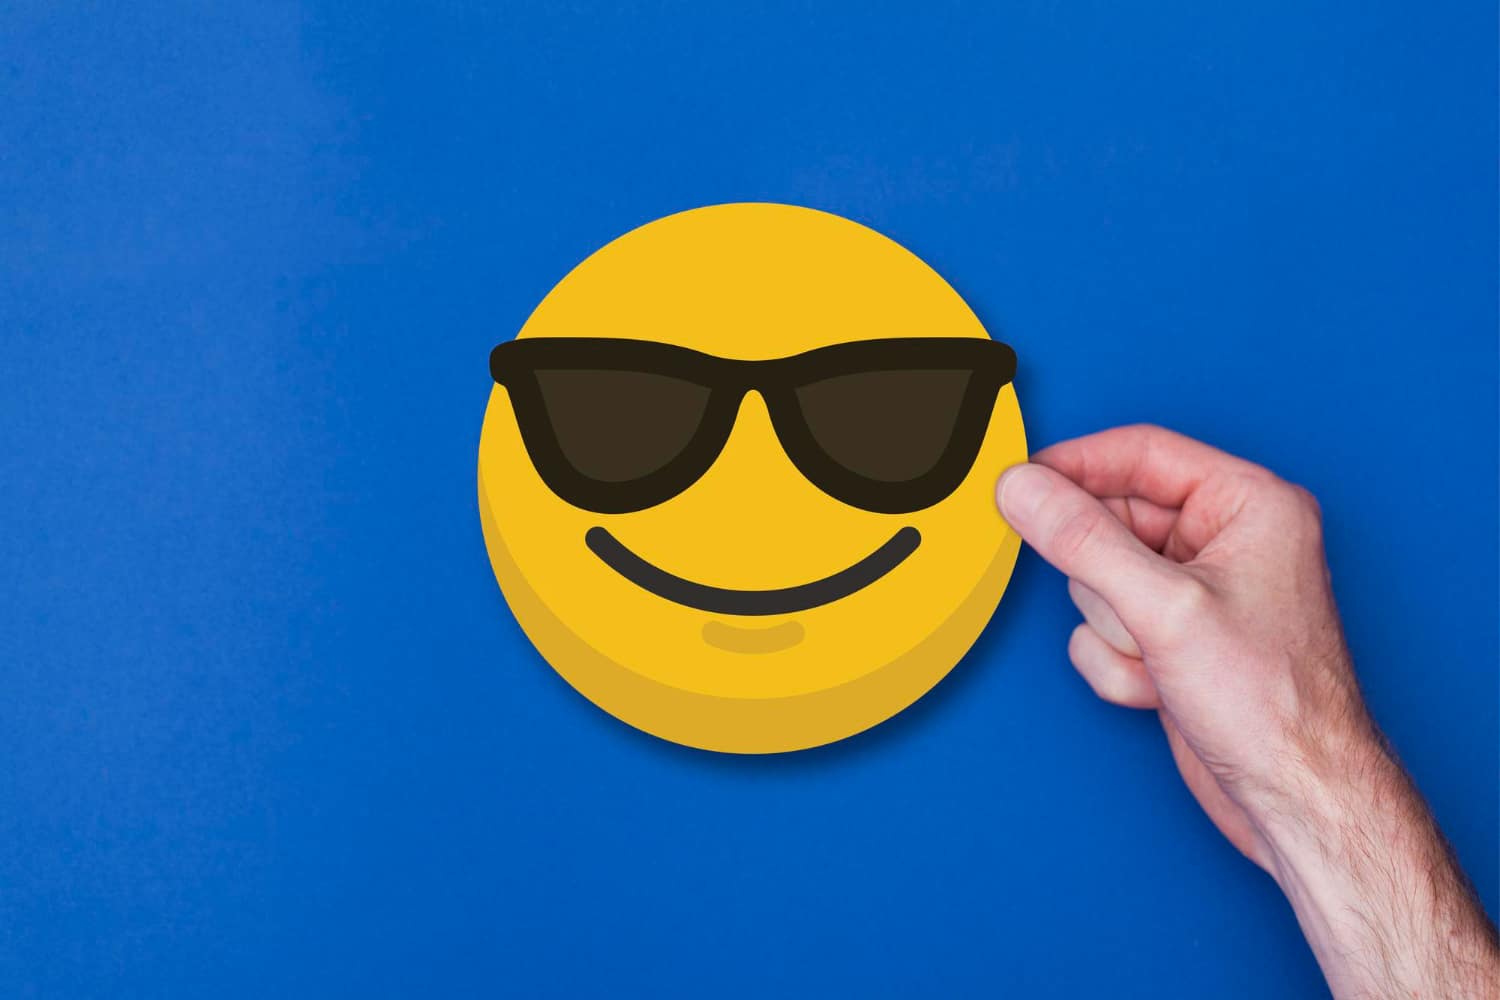  Emojiji: saznajte pravo značenje emojija koji se smiješi sa sunčanim naočalama